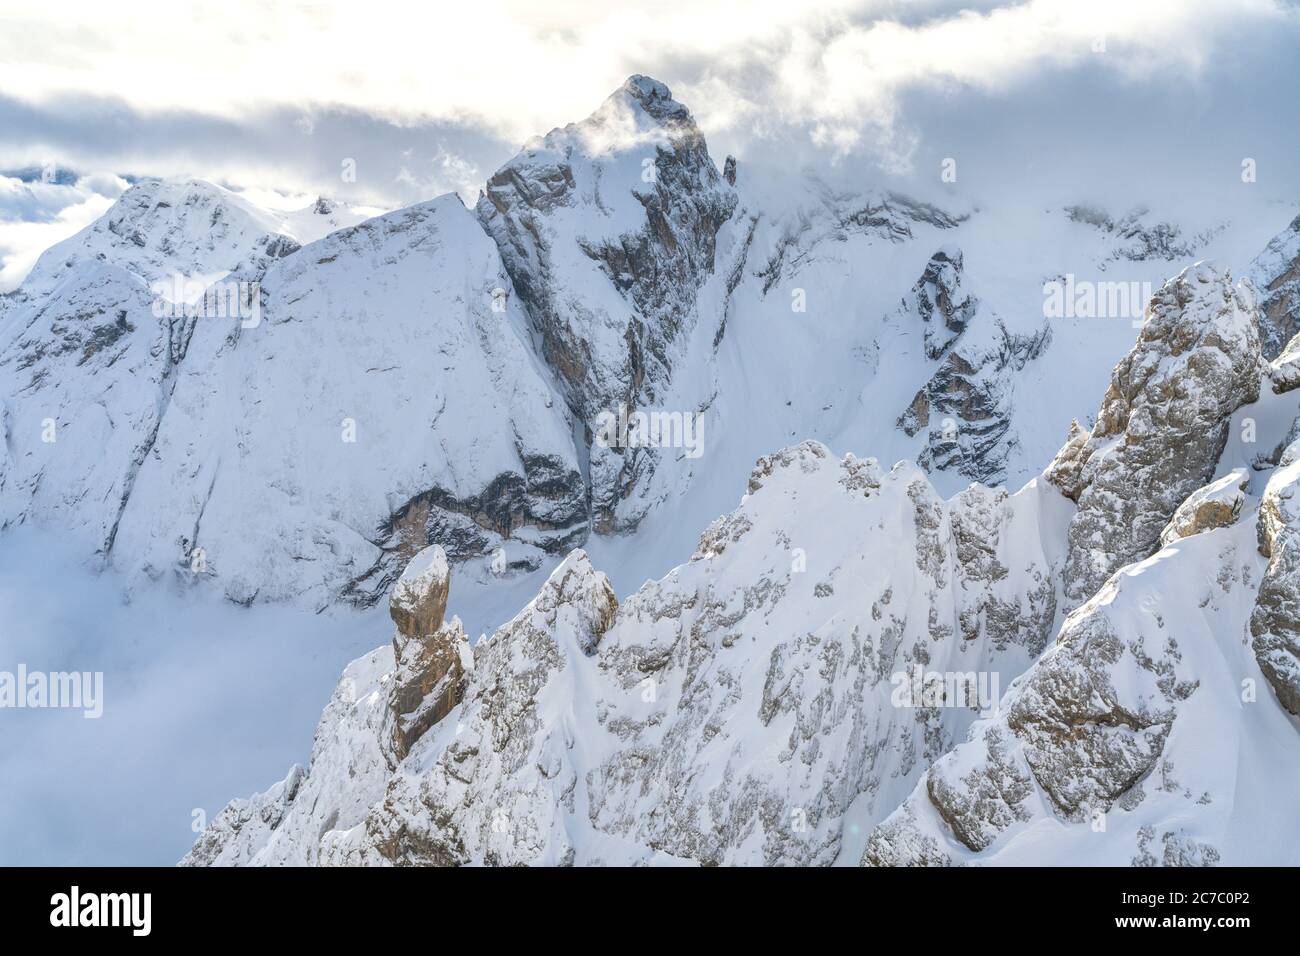 Veduta aerea della Valle Ombretta e della Marmolada ricoperte di neve, Dolomiti, Veneto, Italia Foto Stock